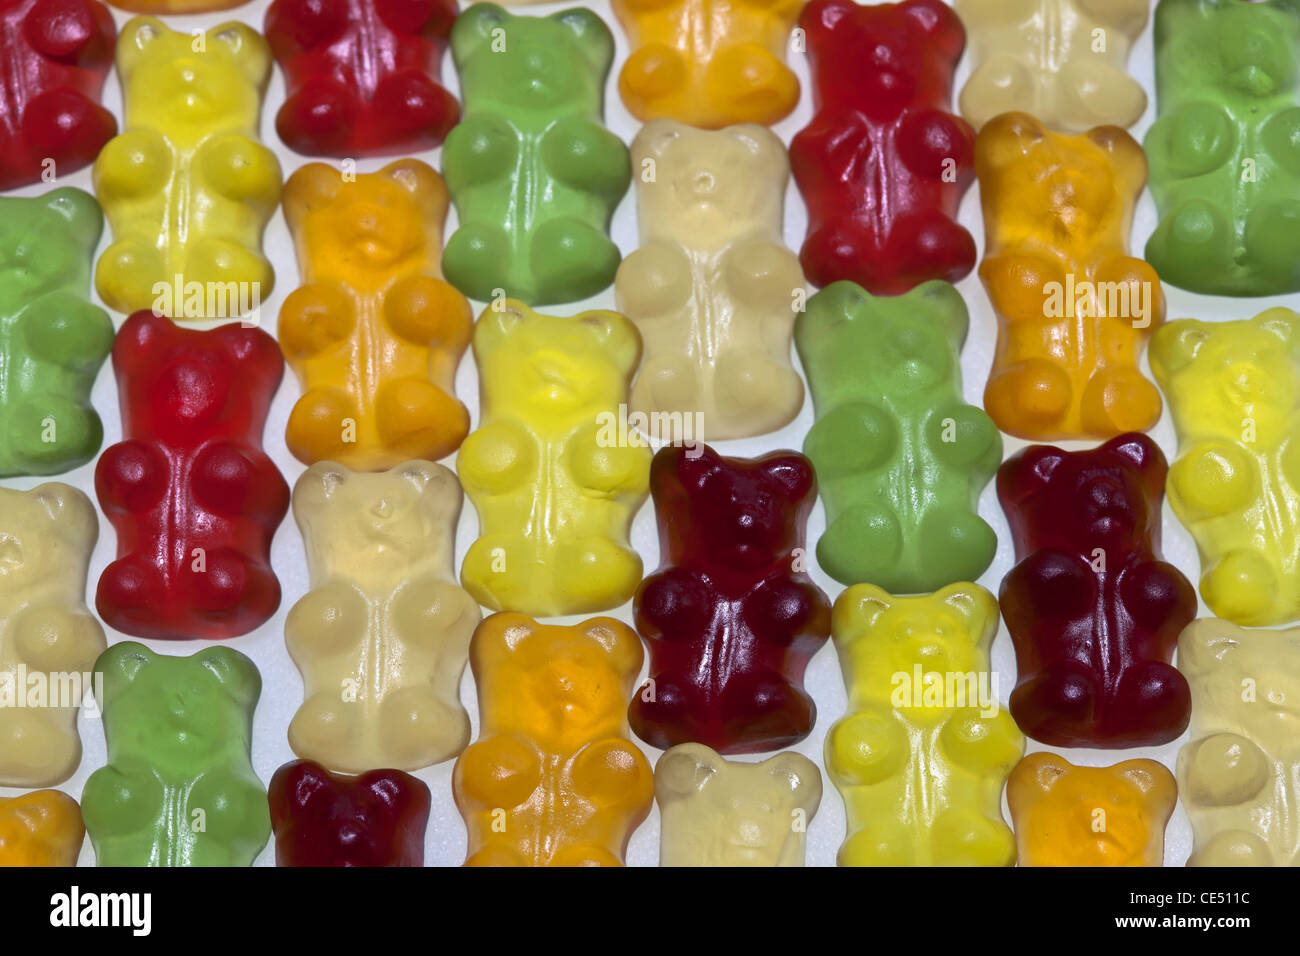 Ours Gummi bio, aromatisé et coloré avec du jus de fruits, Banque D'Images